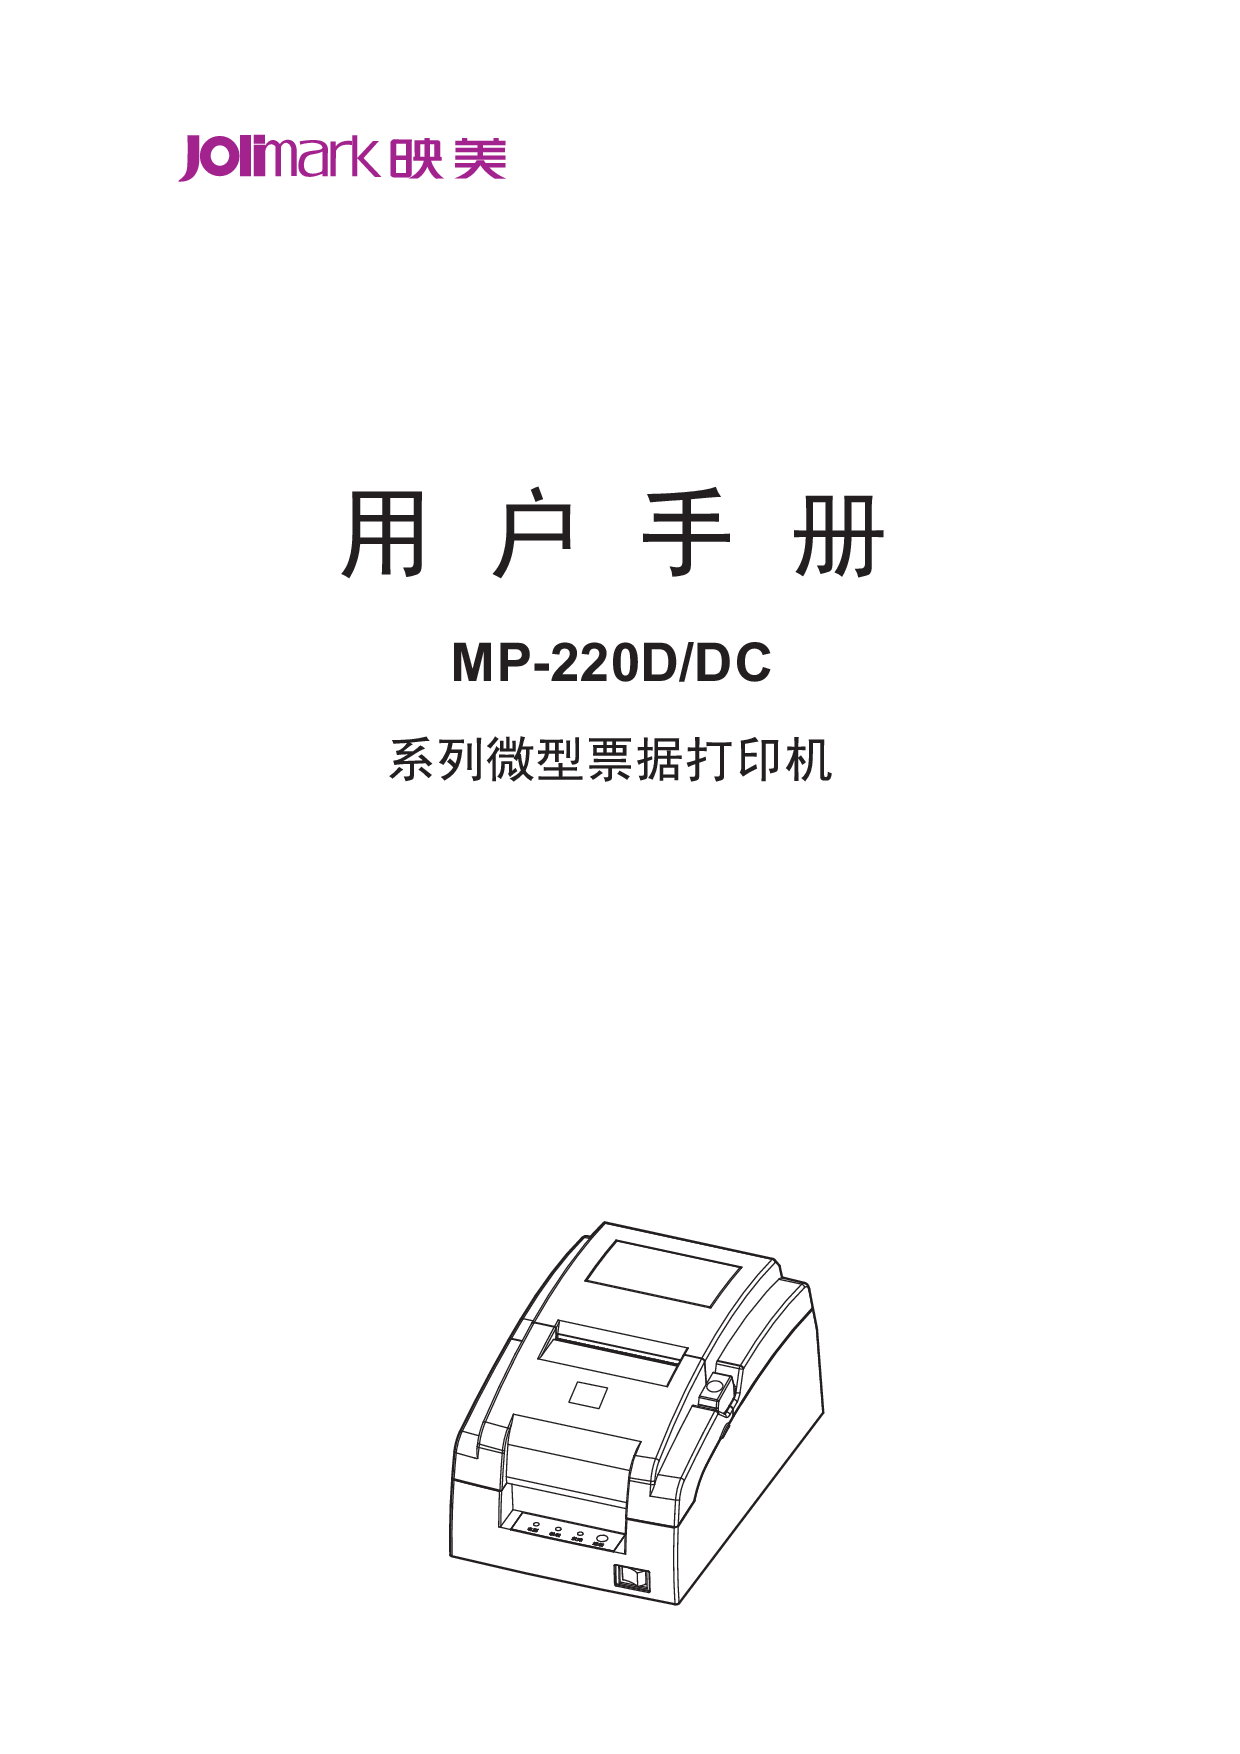 映美 Jolimark MP-220D 用户手册 封面